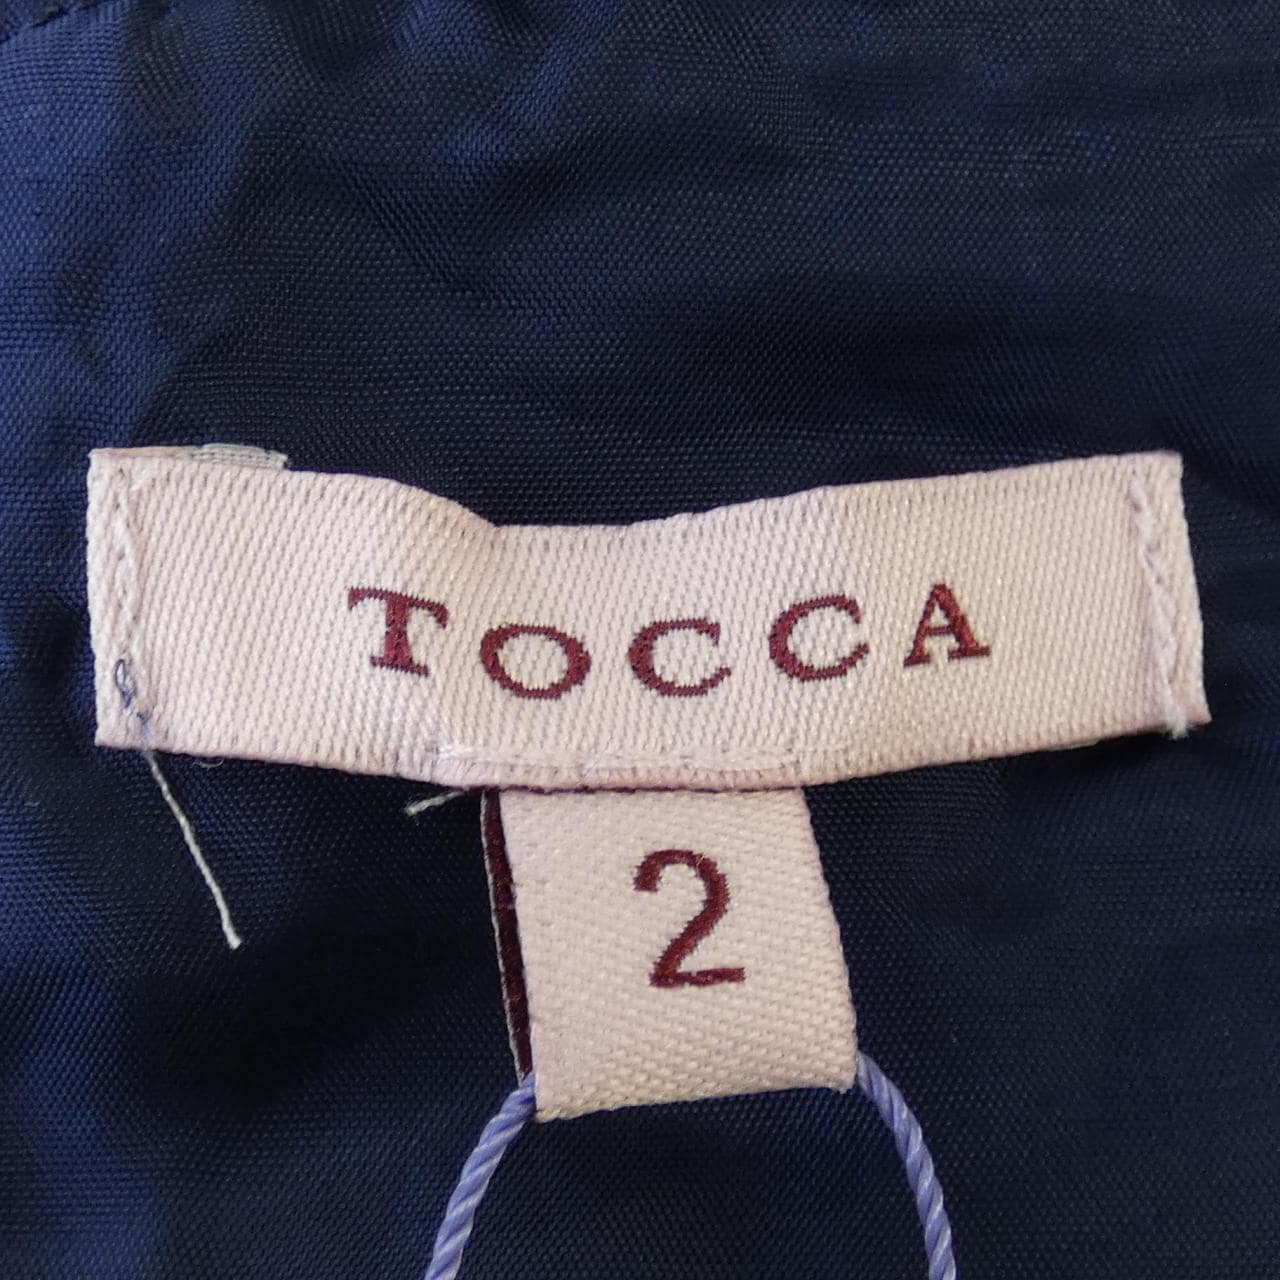 トッカ TOCCA ワンピース